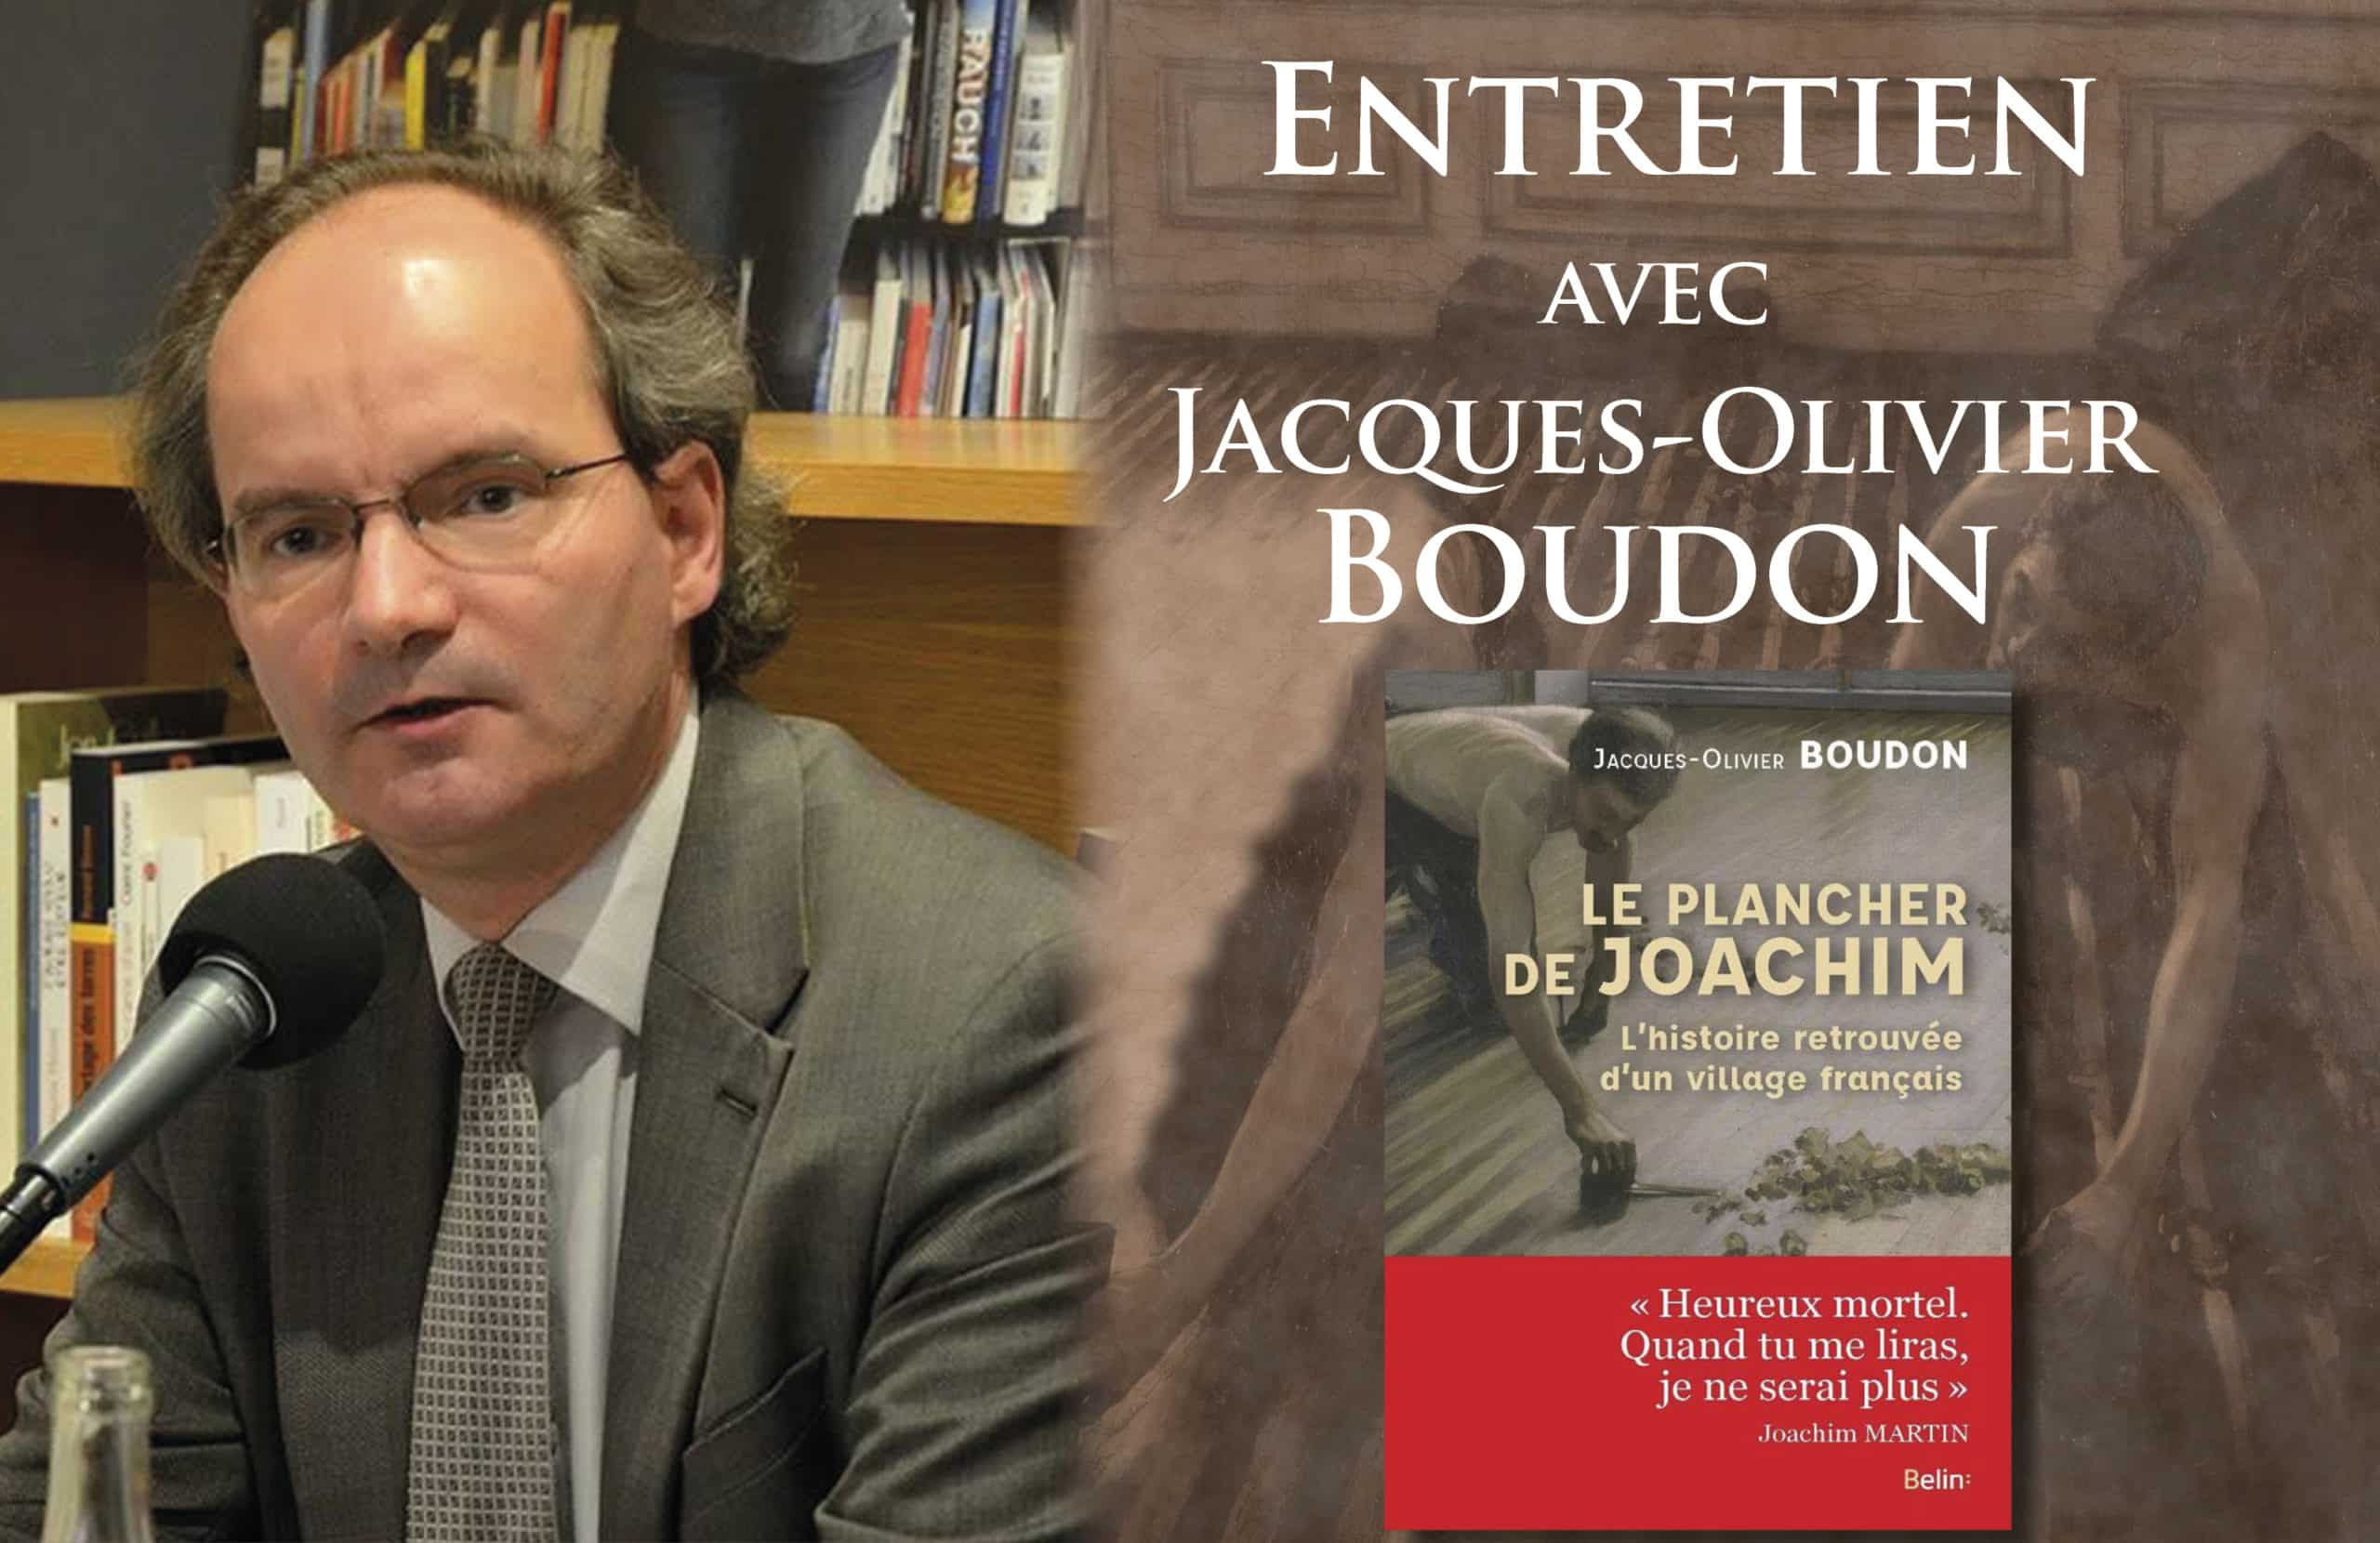 Entretien avec Jacques-Olivier Boudon : Le plancher de Joachim